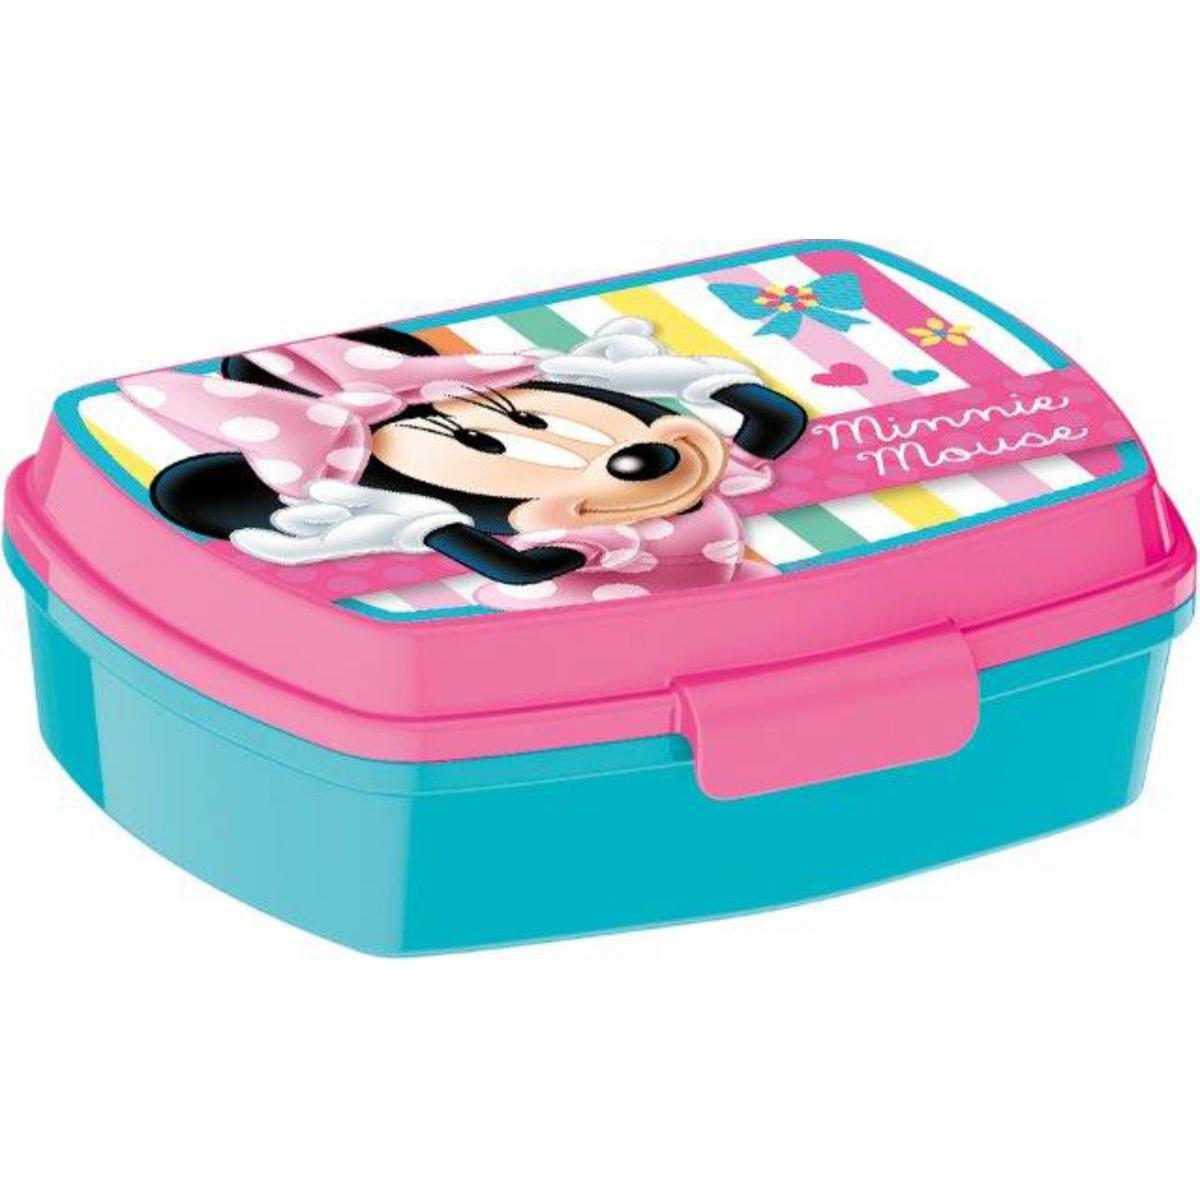 Boîte à goûter Minnie- Plastique - 17 x 14 x 5.5 cm - Multicolore